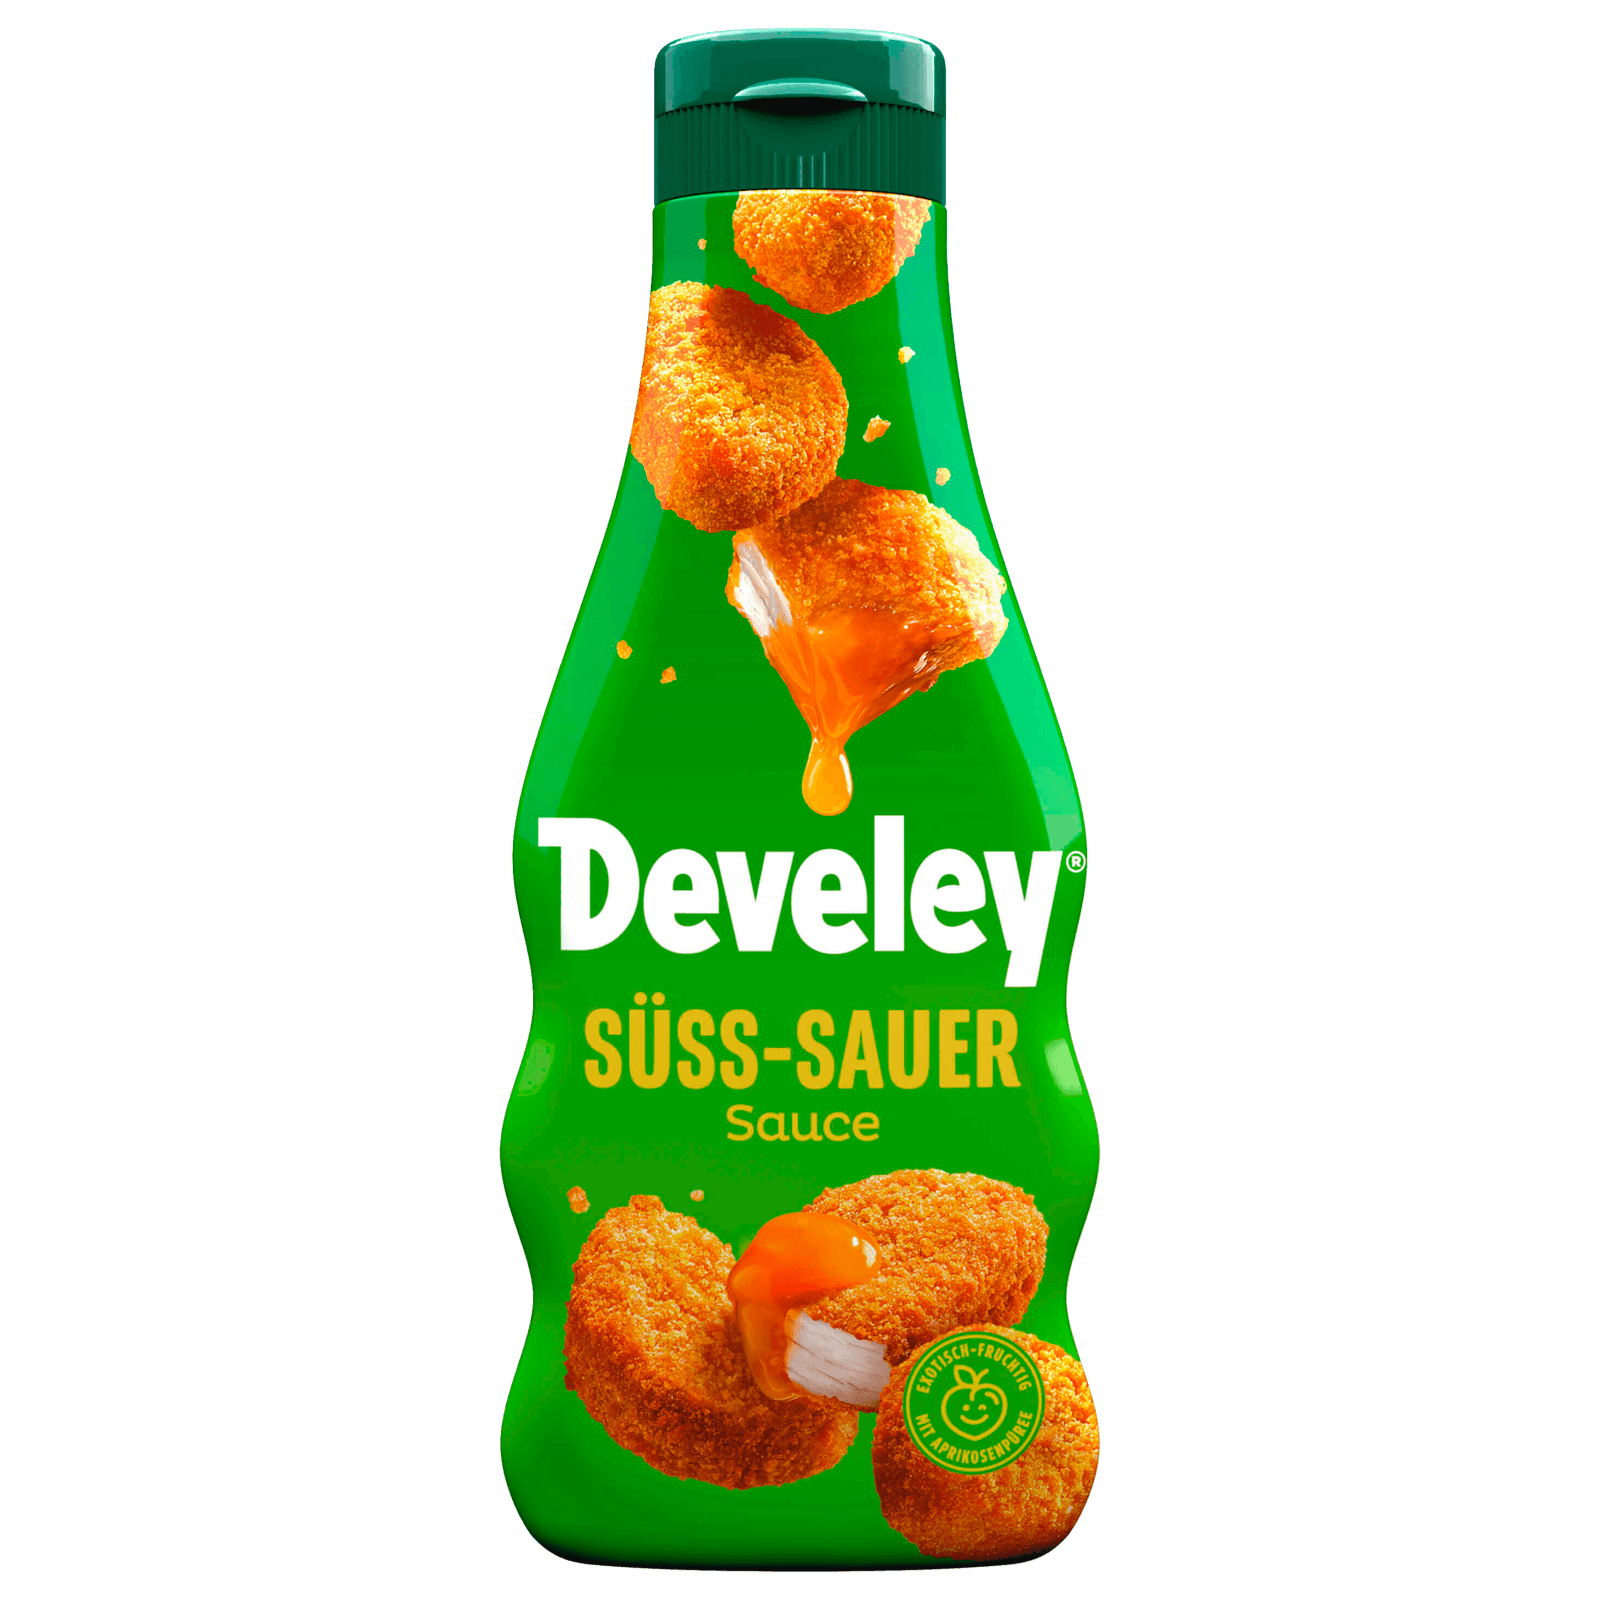 Develey Süß-sauer-Sauce 250ml bei REWE online bestellen!